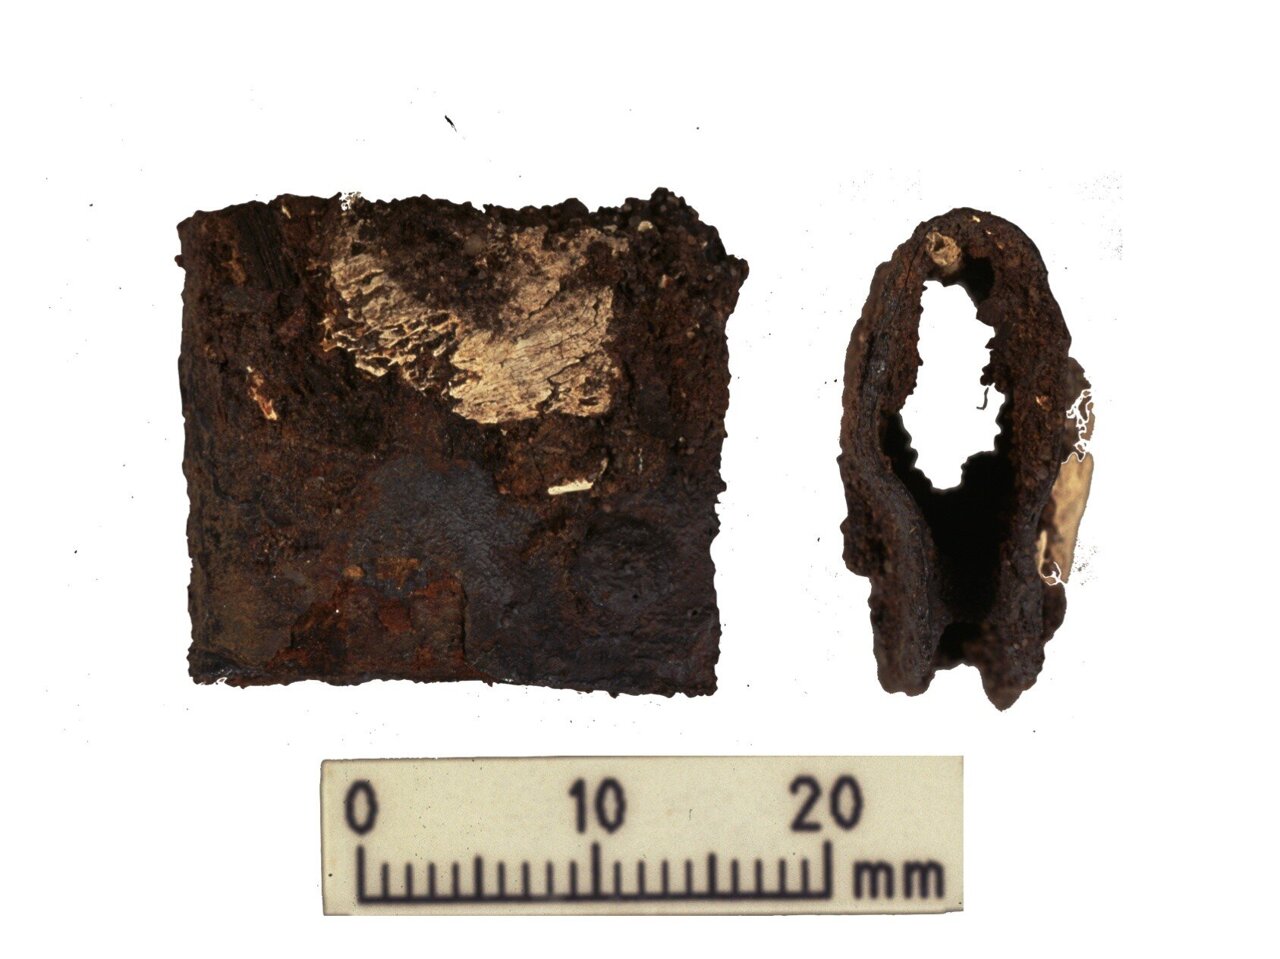 Verschluss vom Schild des Wikingerkriegers, der bei den ursprünglichen Ausgrabungen in den Jahren 1998-2000 gefunden wurde. Die Schließe wurde im selben Grab gefunden wie die menschlichen und tierischen Überreste, die während der neuesten Forschung analysiert wurden.